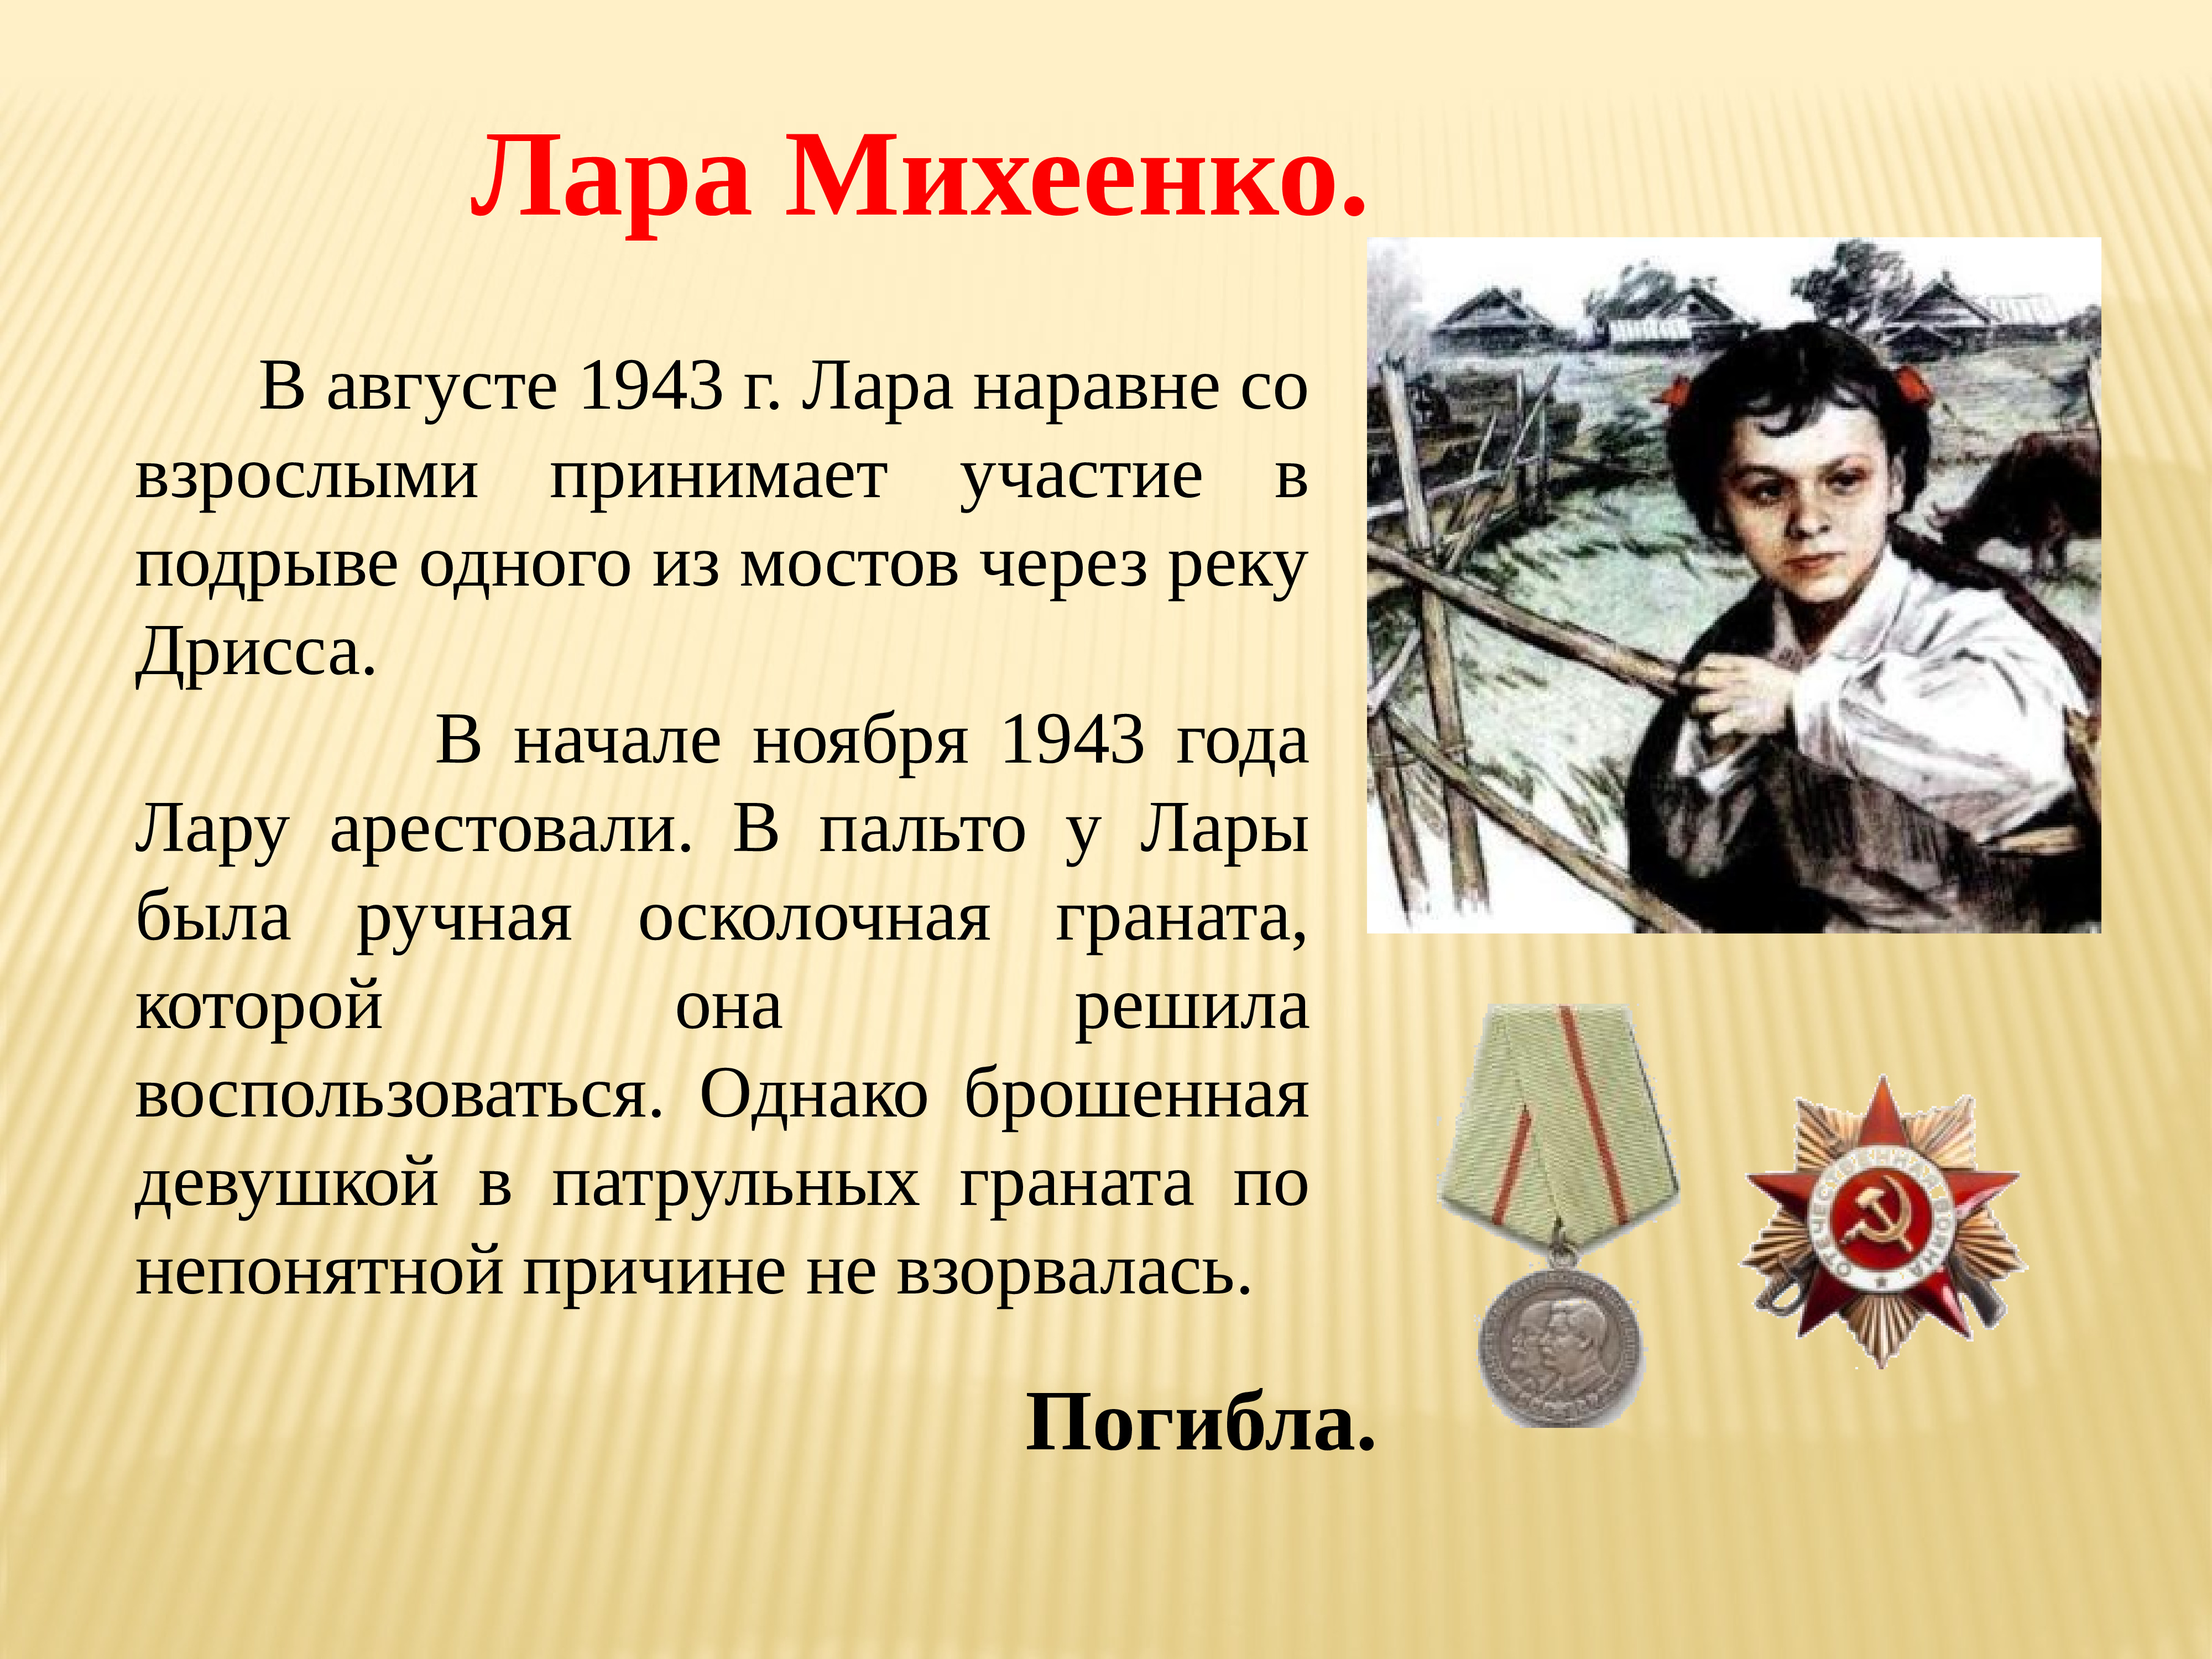 Лара Михеенко герой войны